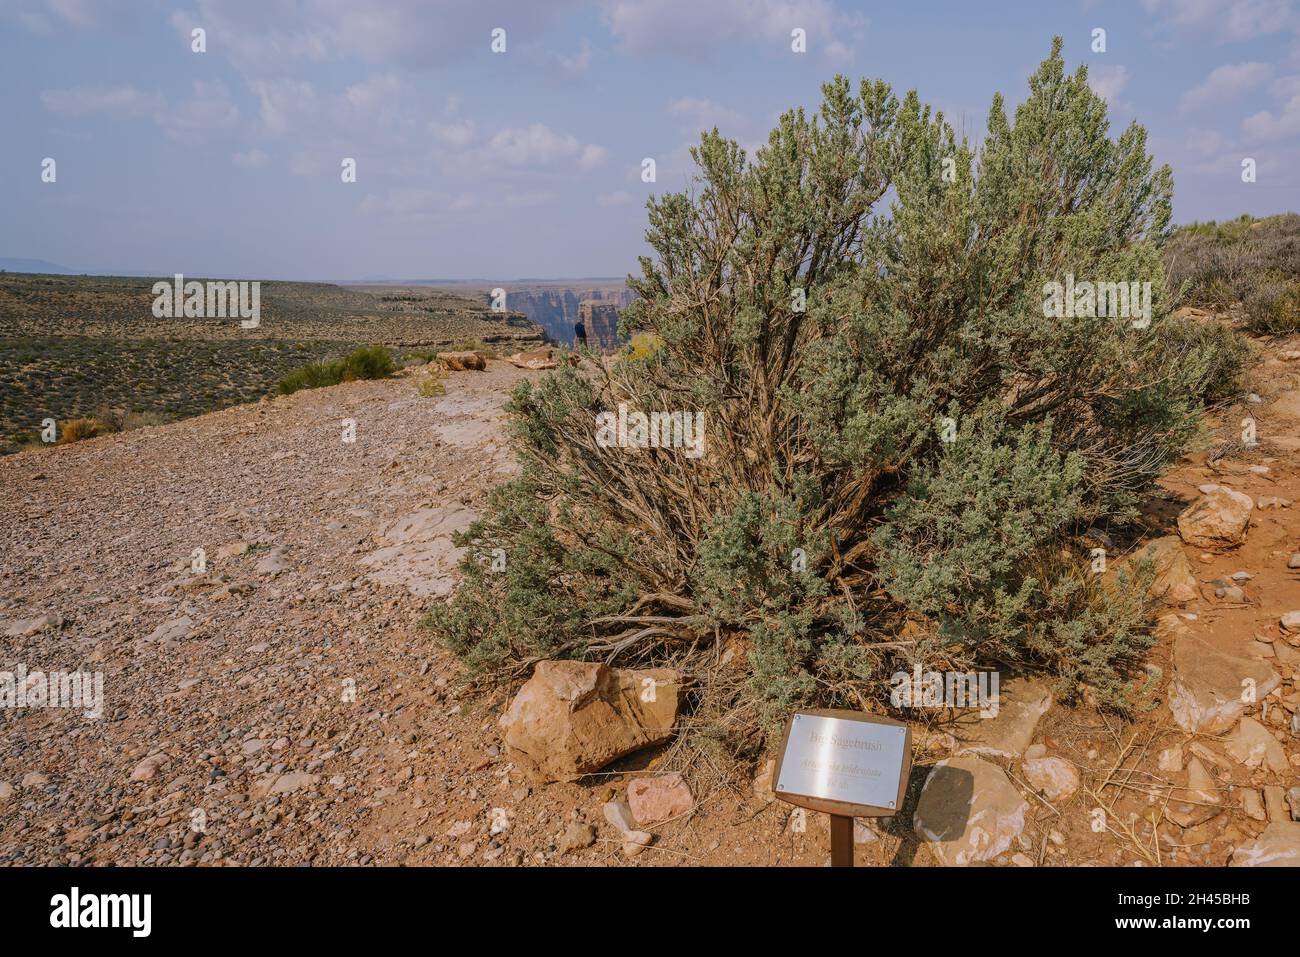 Un gros sagebrush ou un sagebrush du Grand bassin (Artemisia tridentata), un arbuste toujours vert au milieu du désert en Arizona Banque D'Images